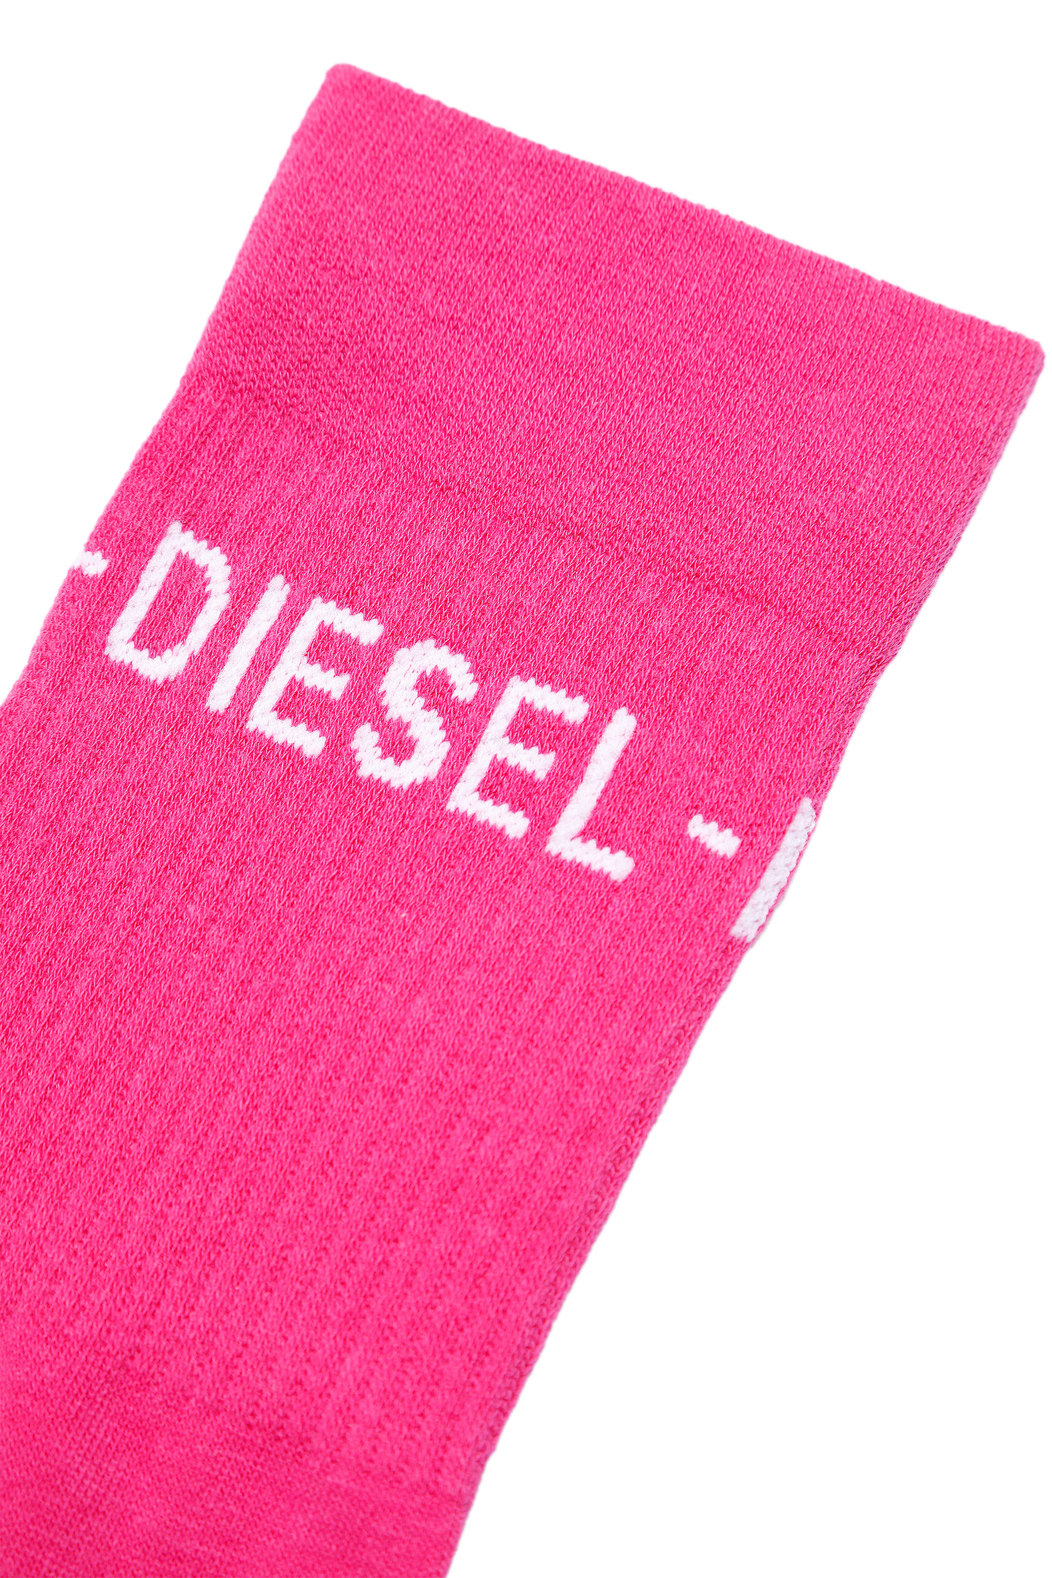 Three-pack of Diesel Industry logo socks